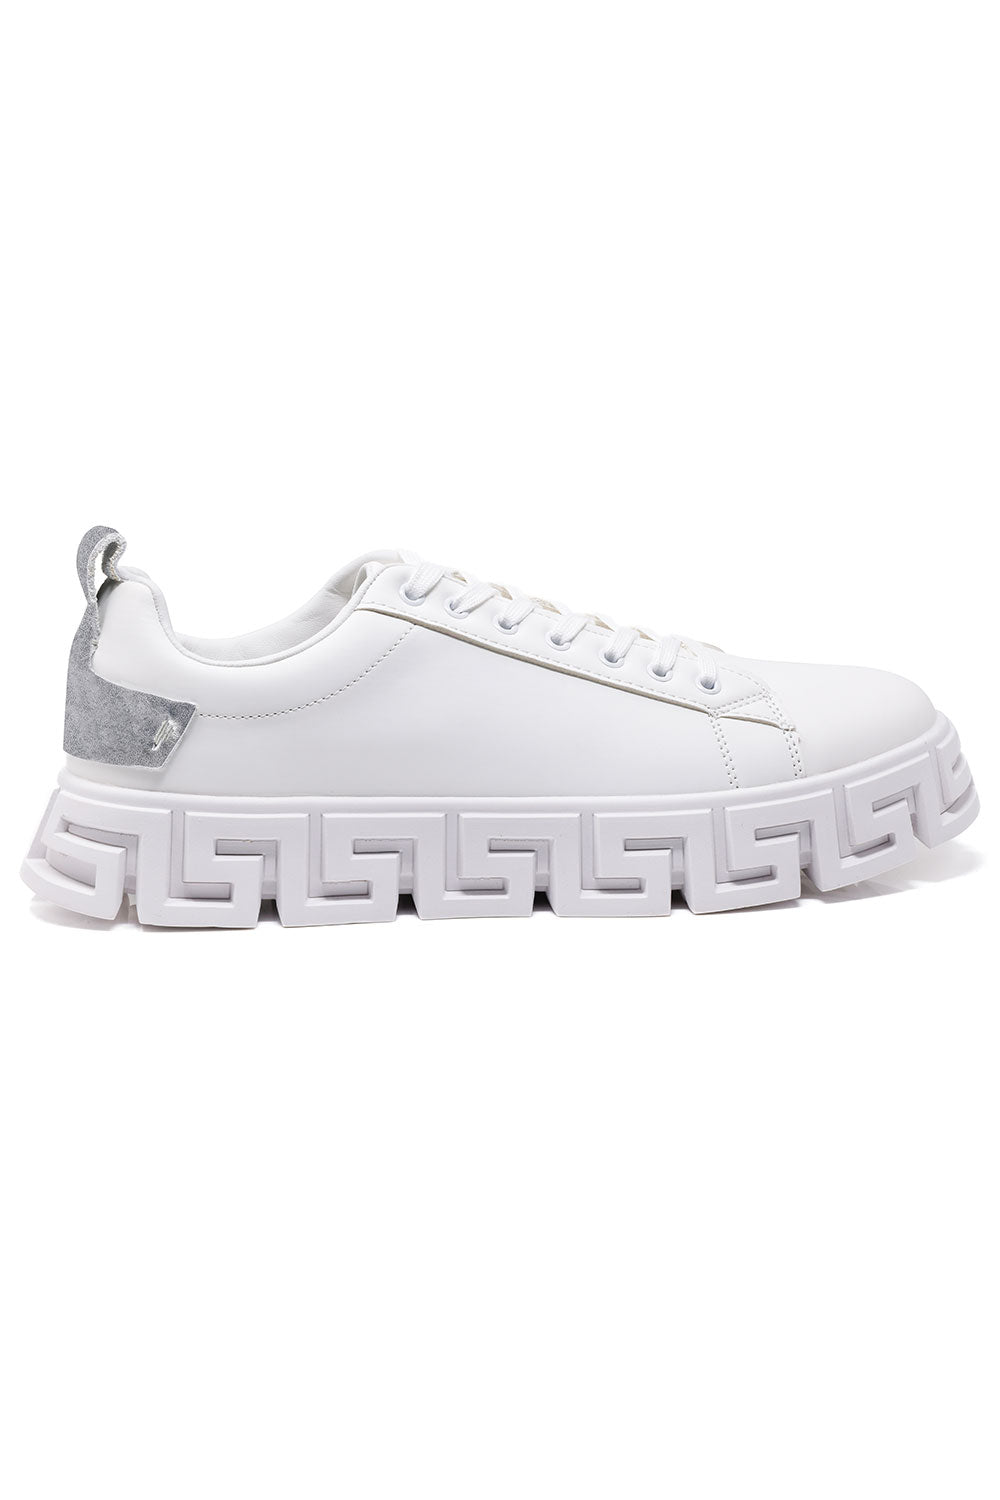 Barabas Men's White Greek Key Sole Low Top Sneakers - Dudes Boutique